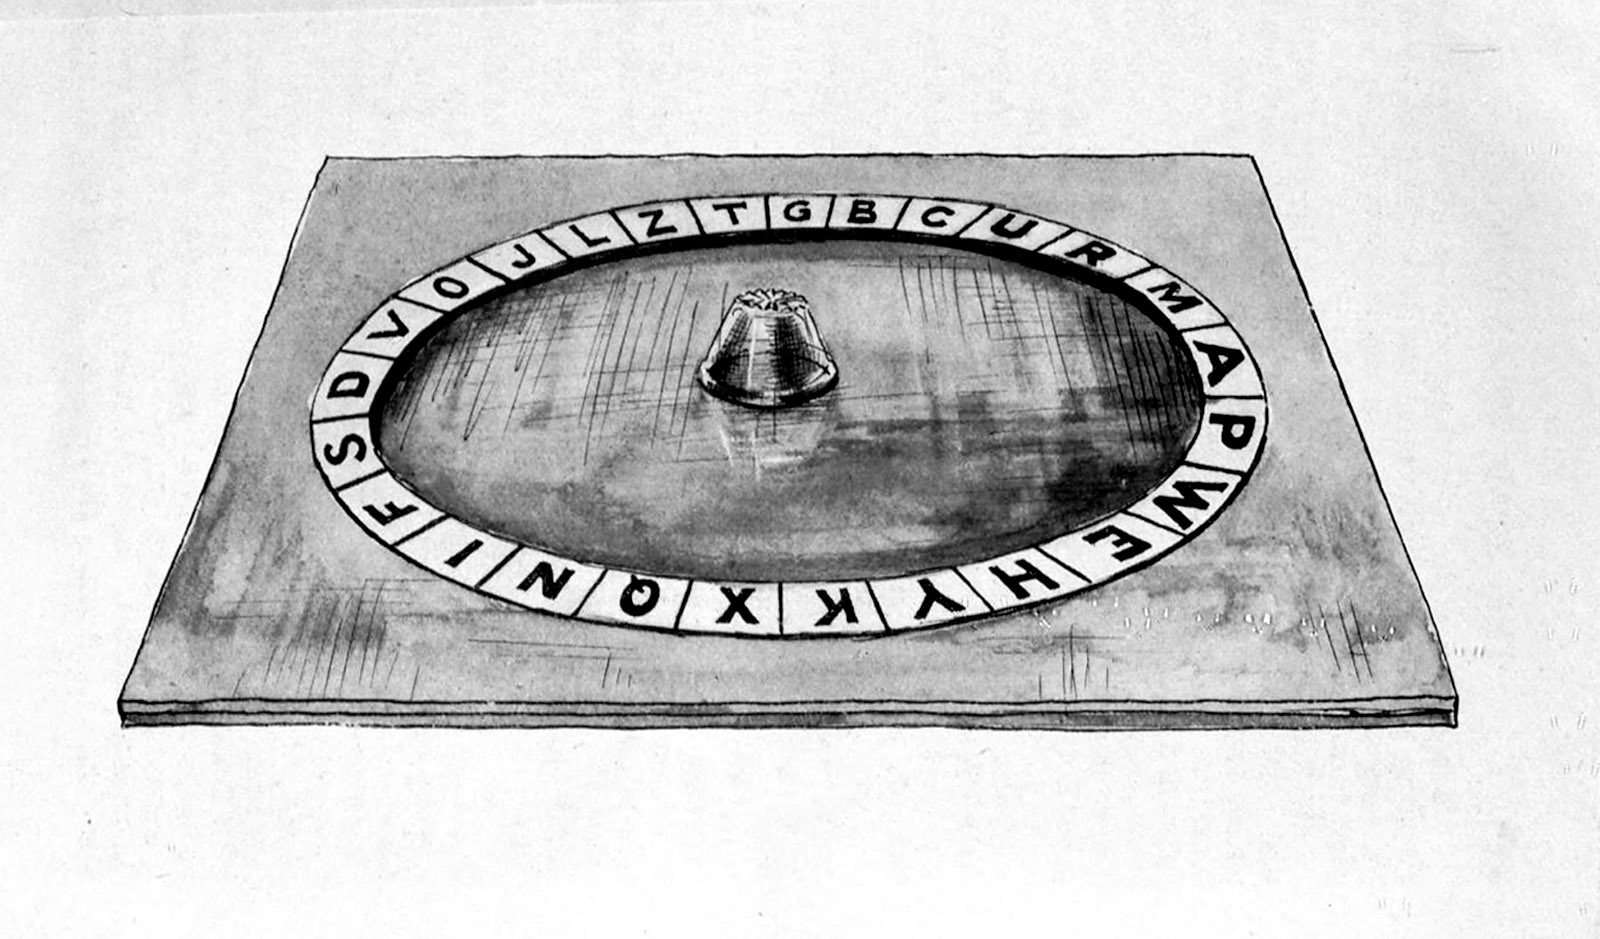 A drawing of Jones’s Ouija board